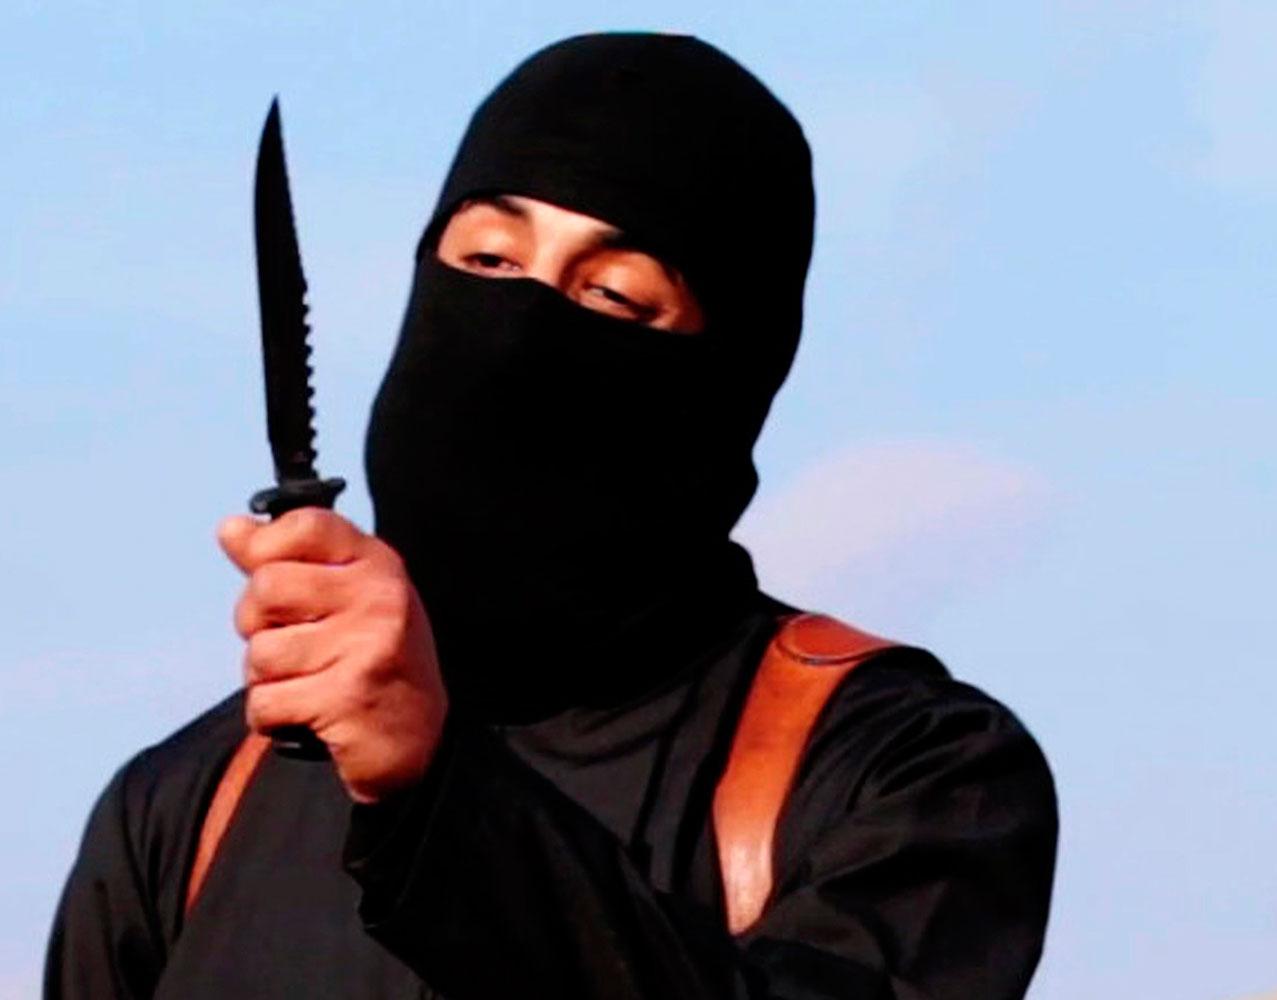 ”Jihad John” från En av IS propagandavideos.